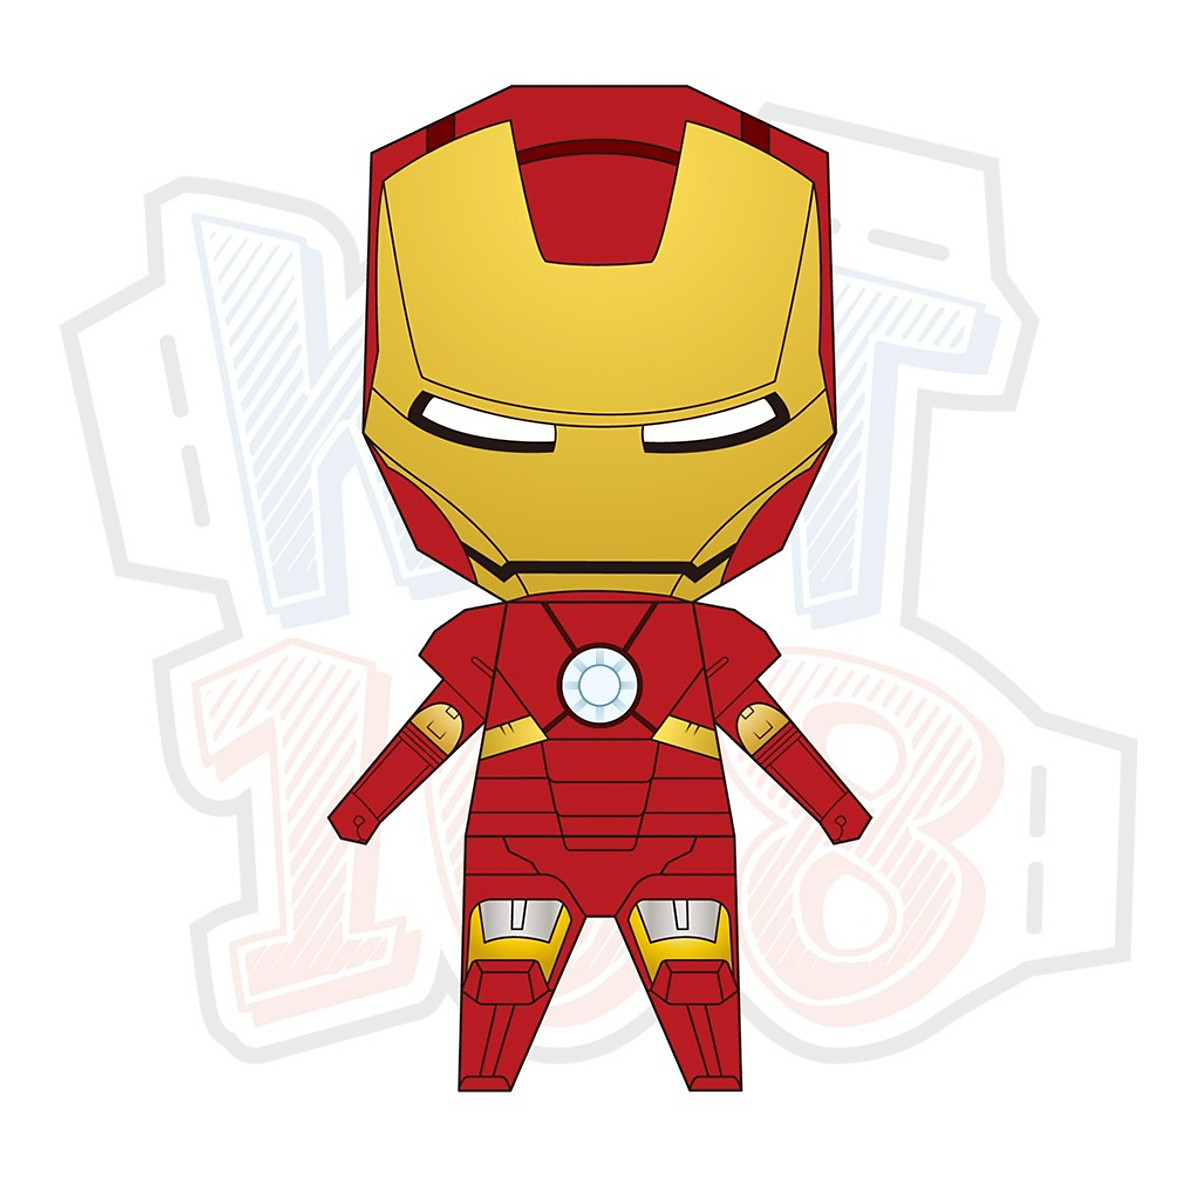 Mô hình giấy Avengers Robot Chibi Iron Man: Bạn là fan của các siêu anh hùng trong bộ phim đình đám Avenger? Hãy cùng thử tài với mô hình giấy Robot Chibi Iron Man đầy thử thách và sáng tạo. Màn hình siêu sắc nét và đậm chất hành động sẽ khiến bạn không thể rời mắt khỏi sản phẩm.